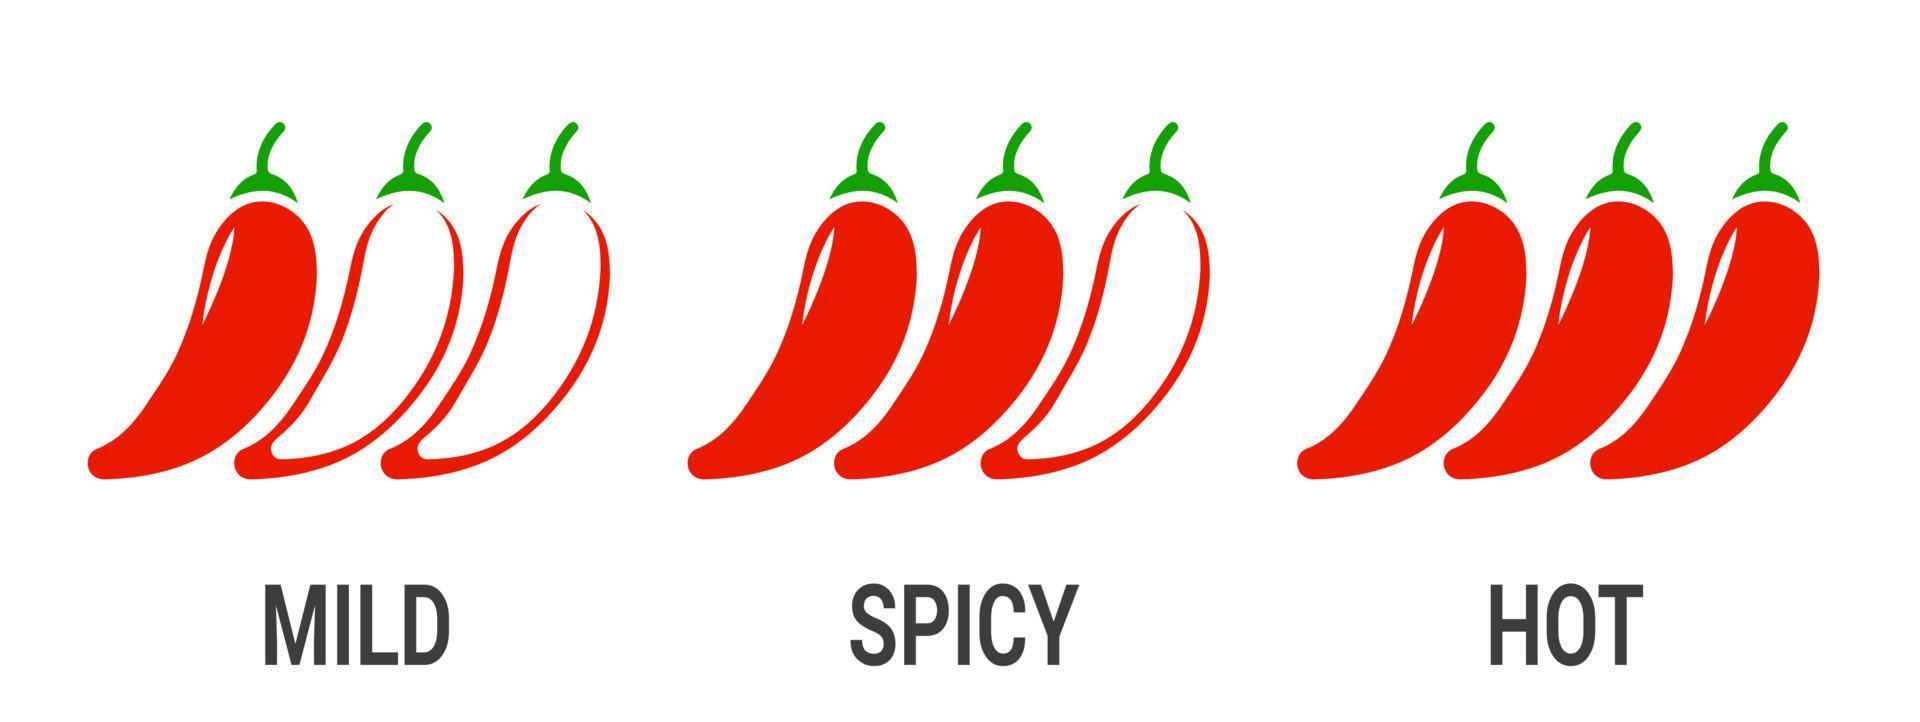 étiquettes de niveau de piment épicé. vecteur nourriture épicée sauce douce et extra piquante, icônes de contour rouge piment rouge. eps 10